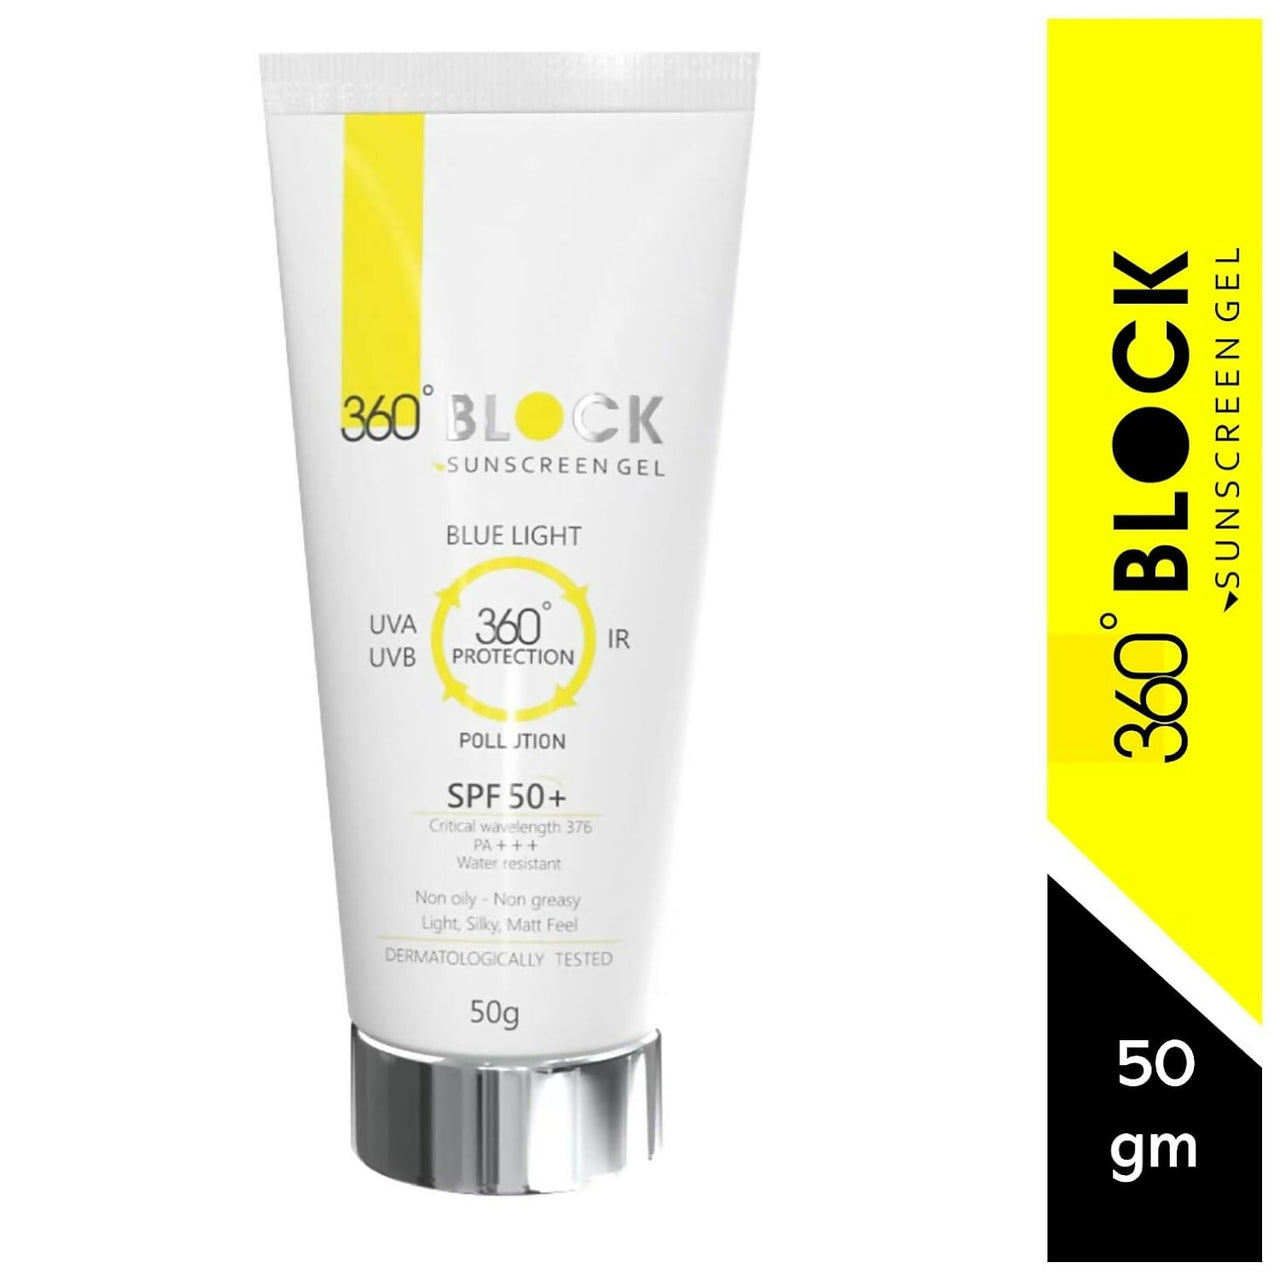 360 Block Sunscreen Gel SPF 50+ - Distacart